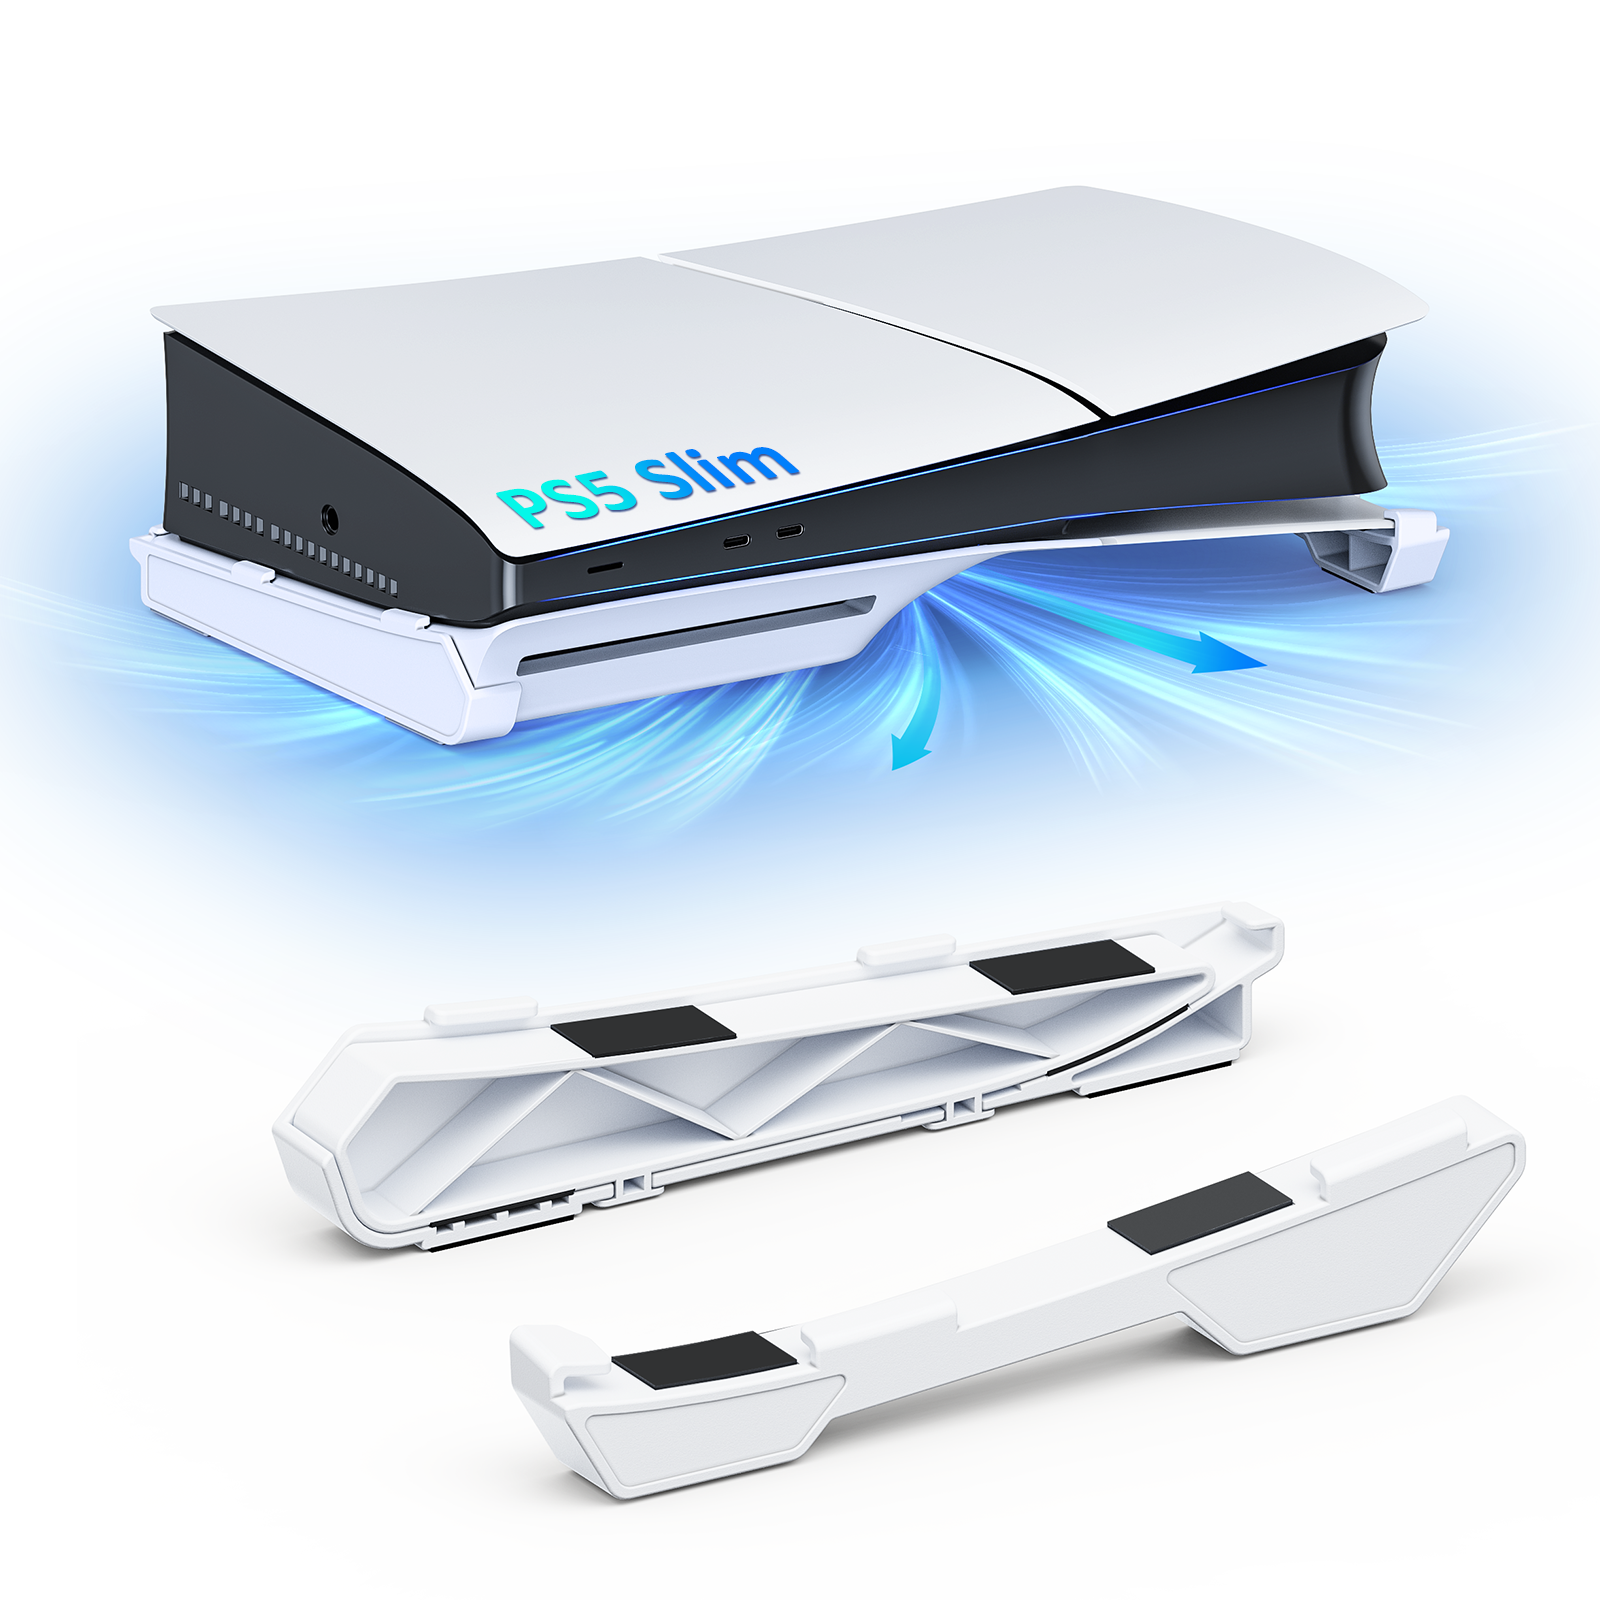 NexiGo PS5 Slim Horizontal Stand White consumerelectronics - NexiGo